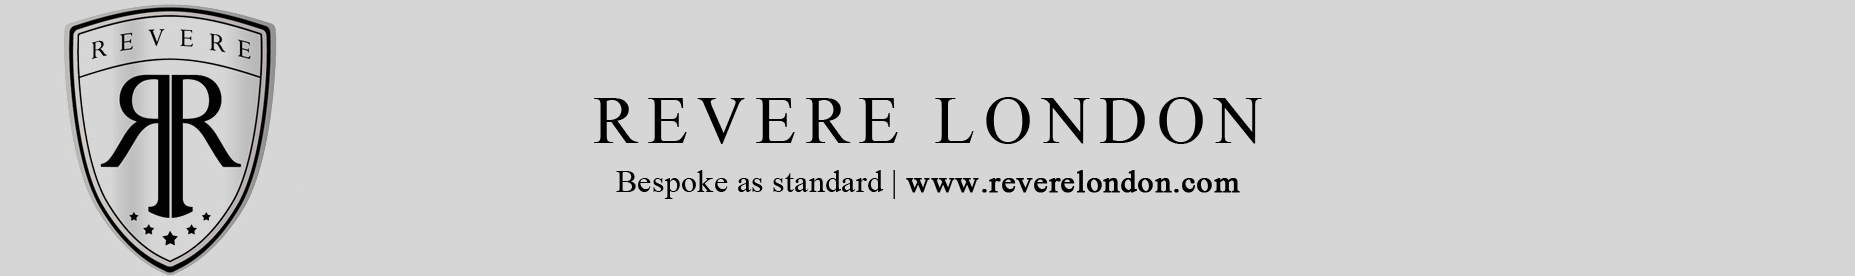 Revere London